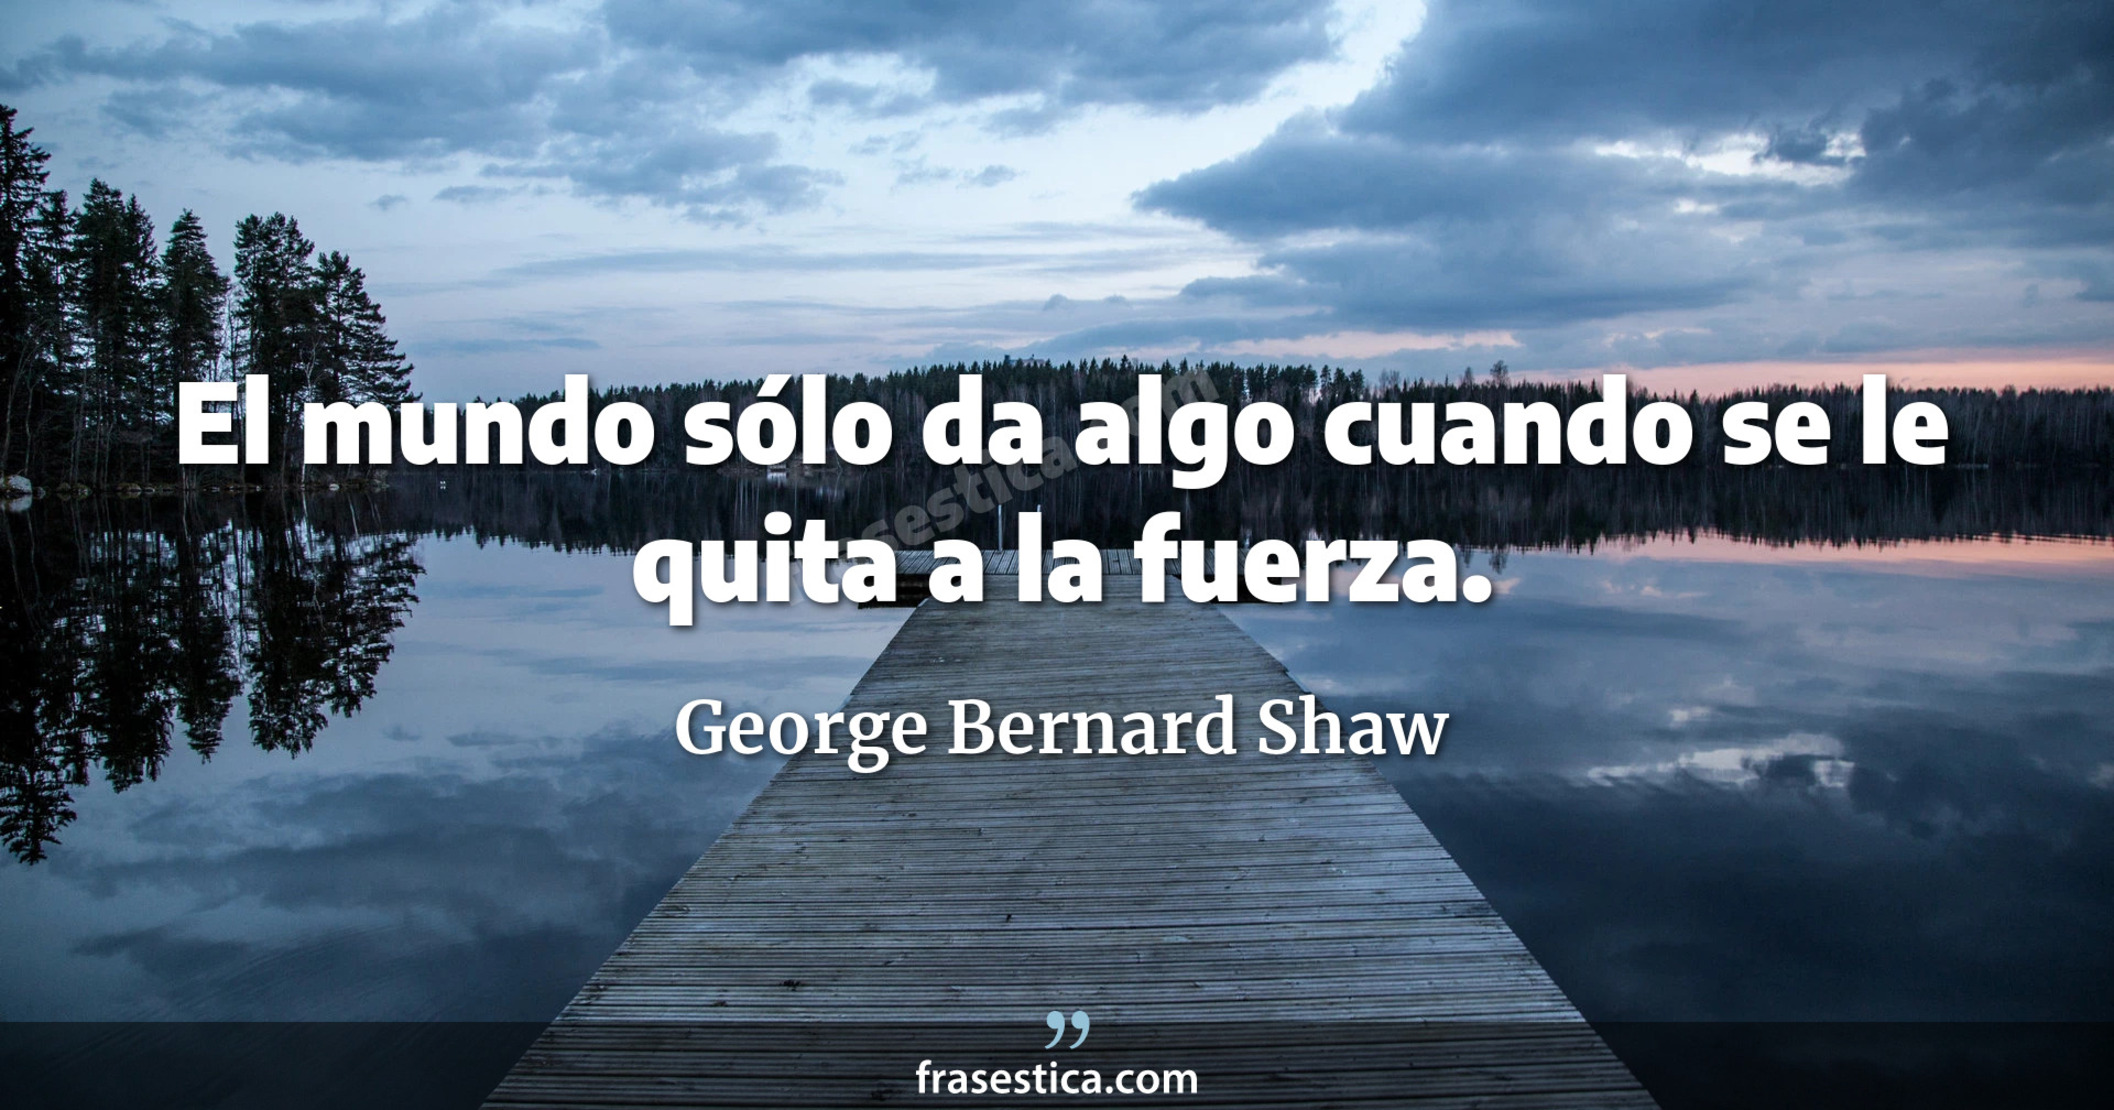 El mundo sólo da algo cuando se le quita a la fuerza. - George Bernard Shaw